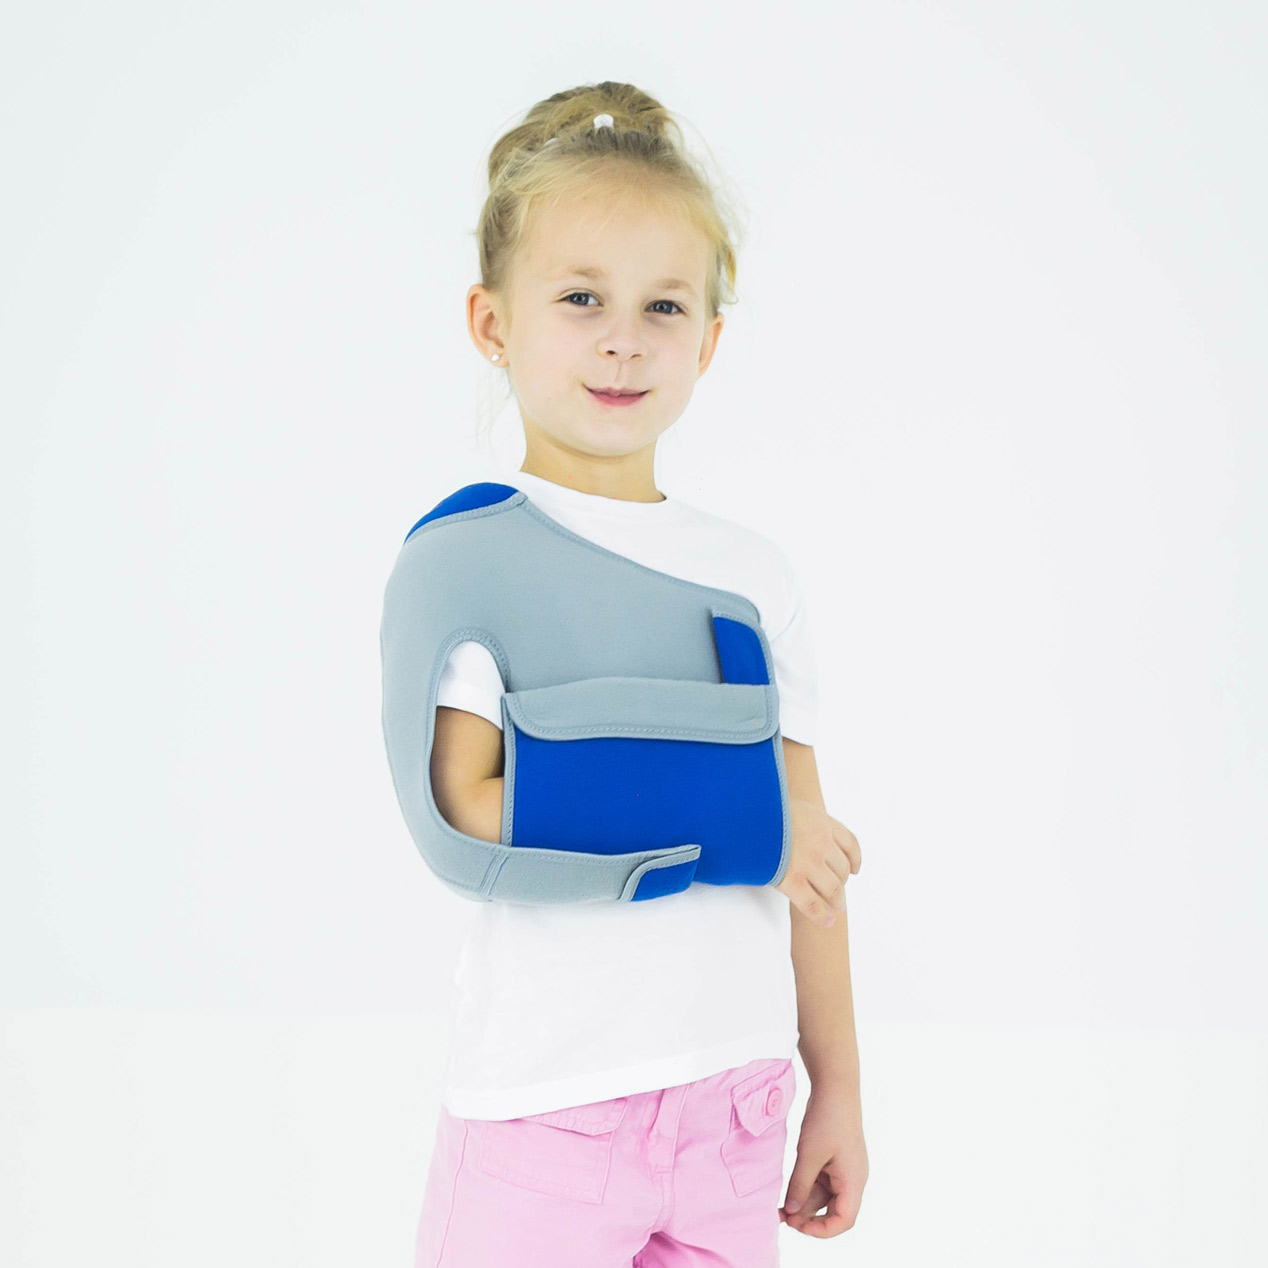 serie Oppositie Plons Pediatric, Pediatrische schouder immobilisatie vest, Open schouder/arm  adductiebandage voor immobilisatie van het schoudergewricht, Shoulder  inmobilising pediatric sling, PEDIATRIC ARM SLING, SHOULDER INMOBILISING  PEDIATRIC SLING